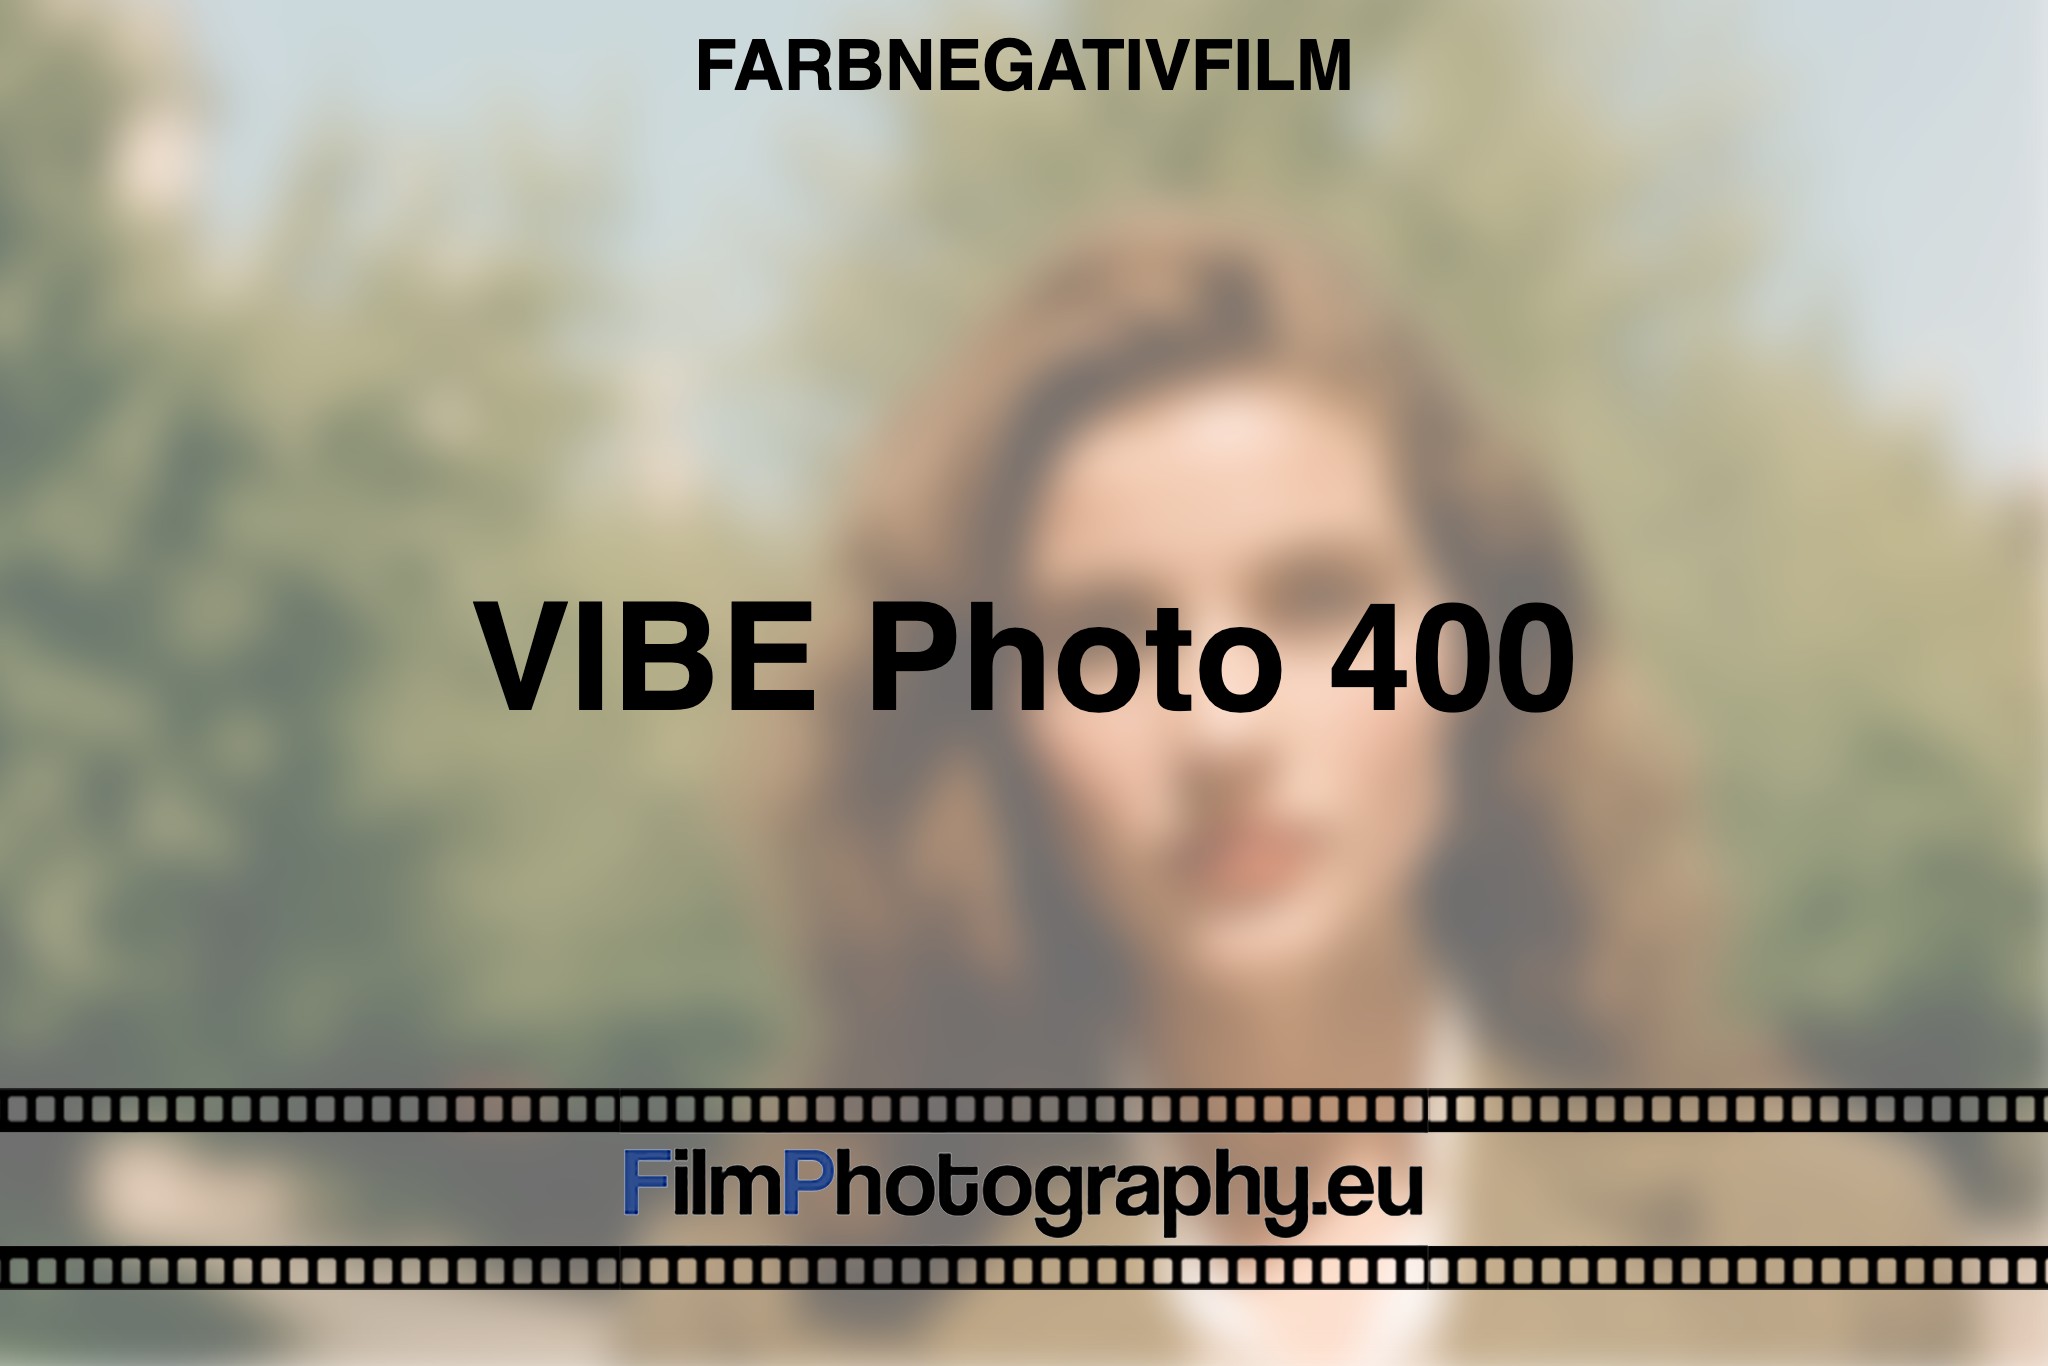 vibe-photo-400-farbnegativfilm-bnv